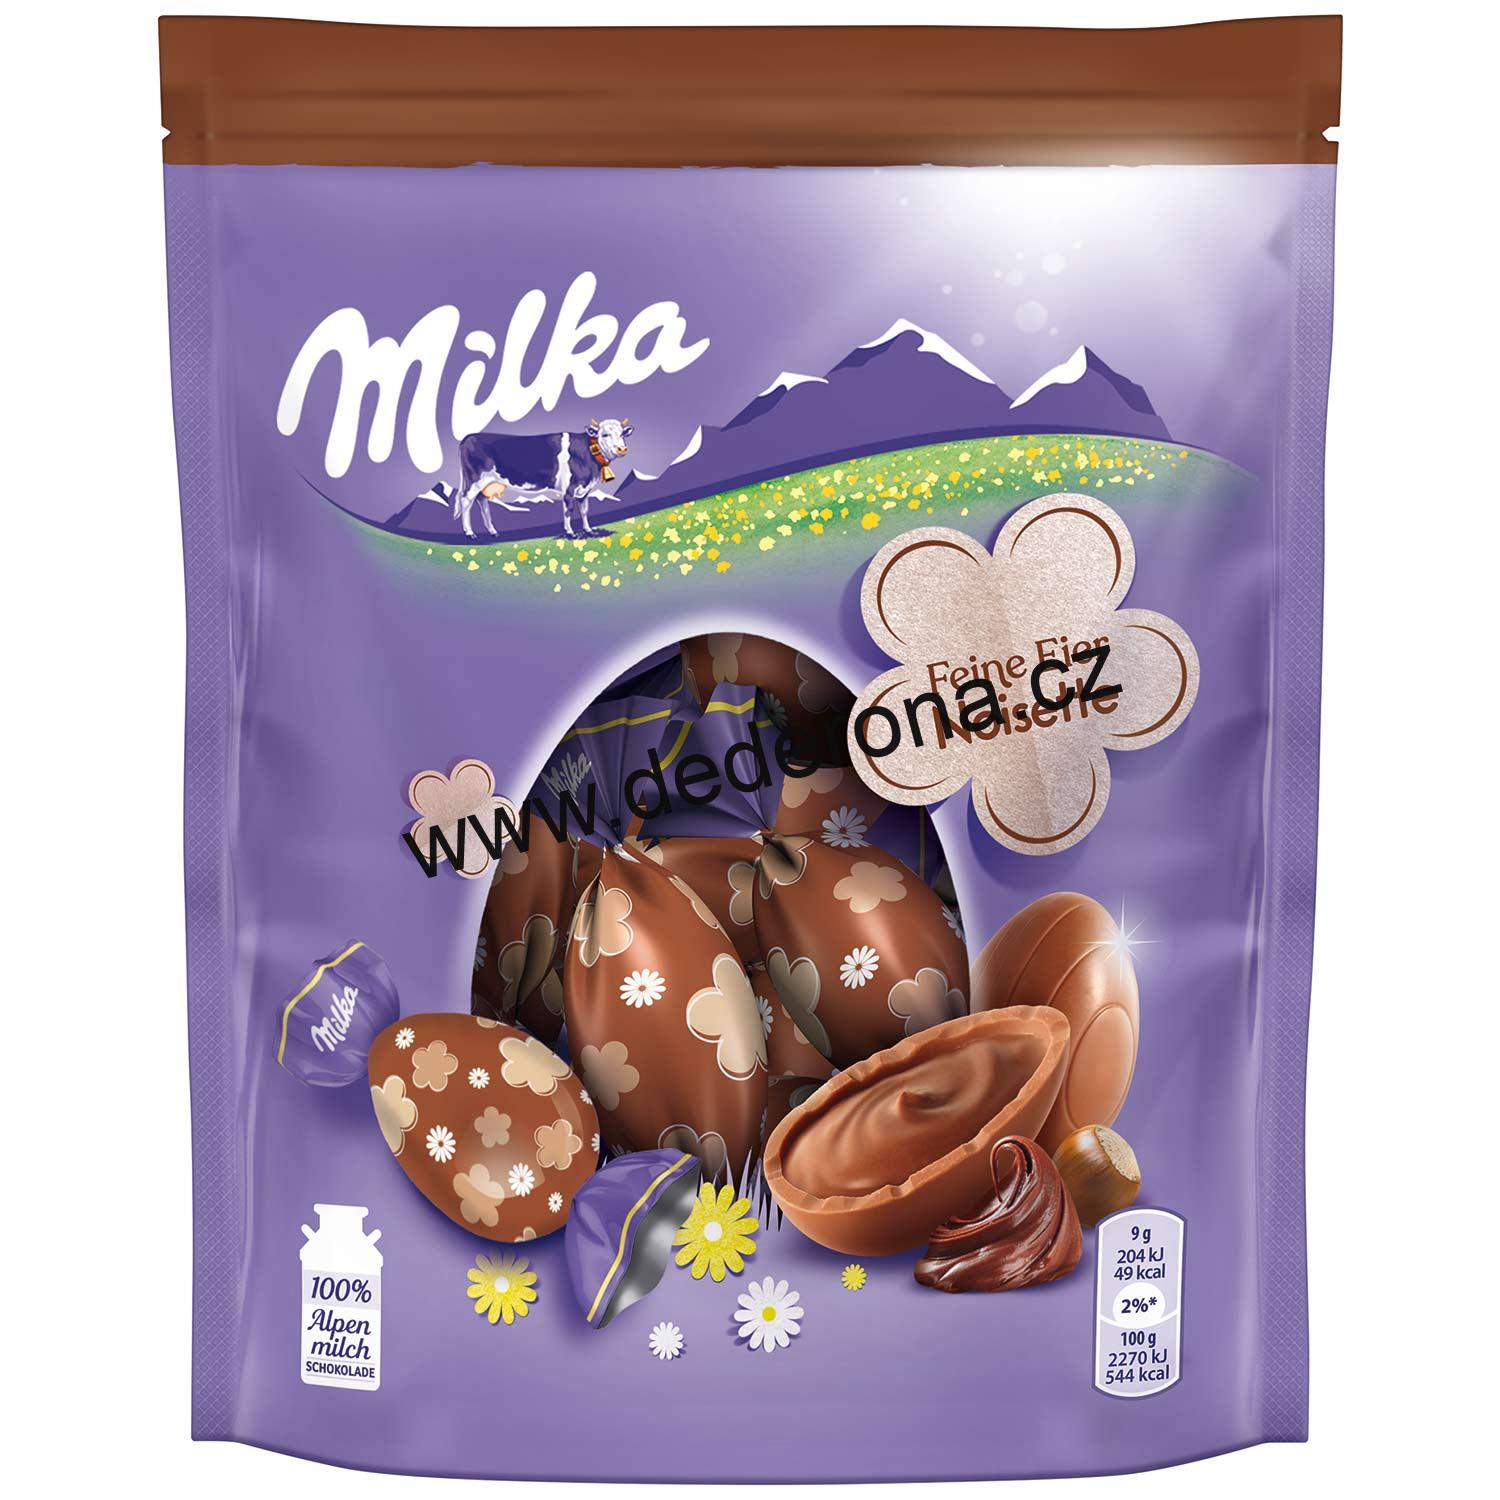 Milka - VELIKONOČNÍ VAJÍČKA NOISETTE 90g - Německo!